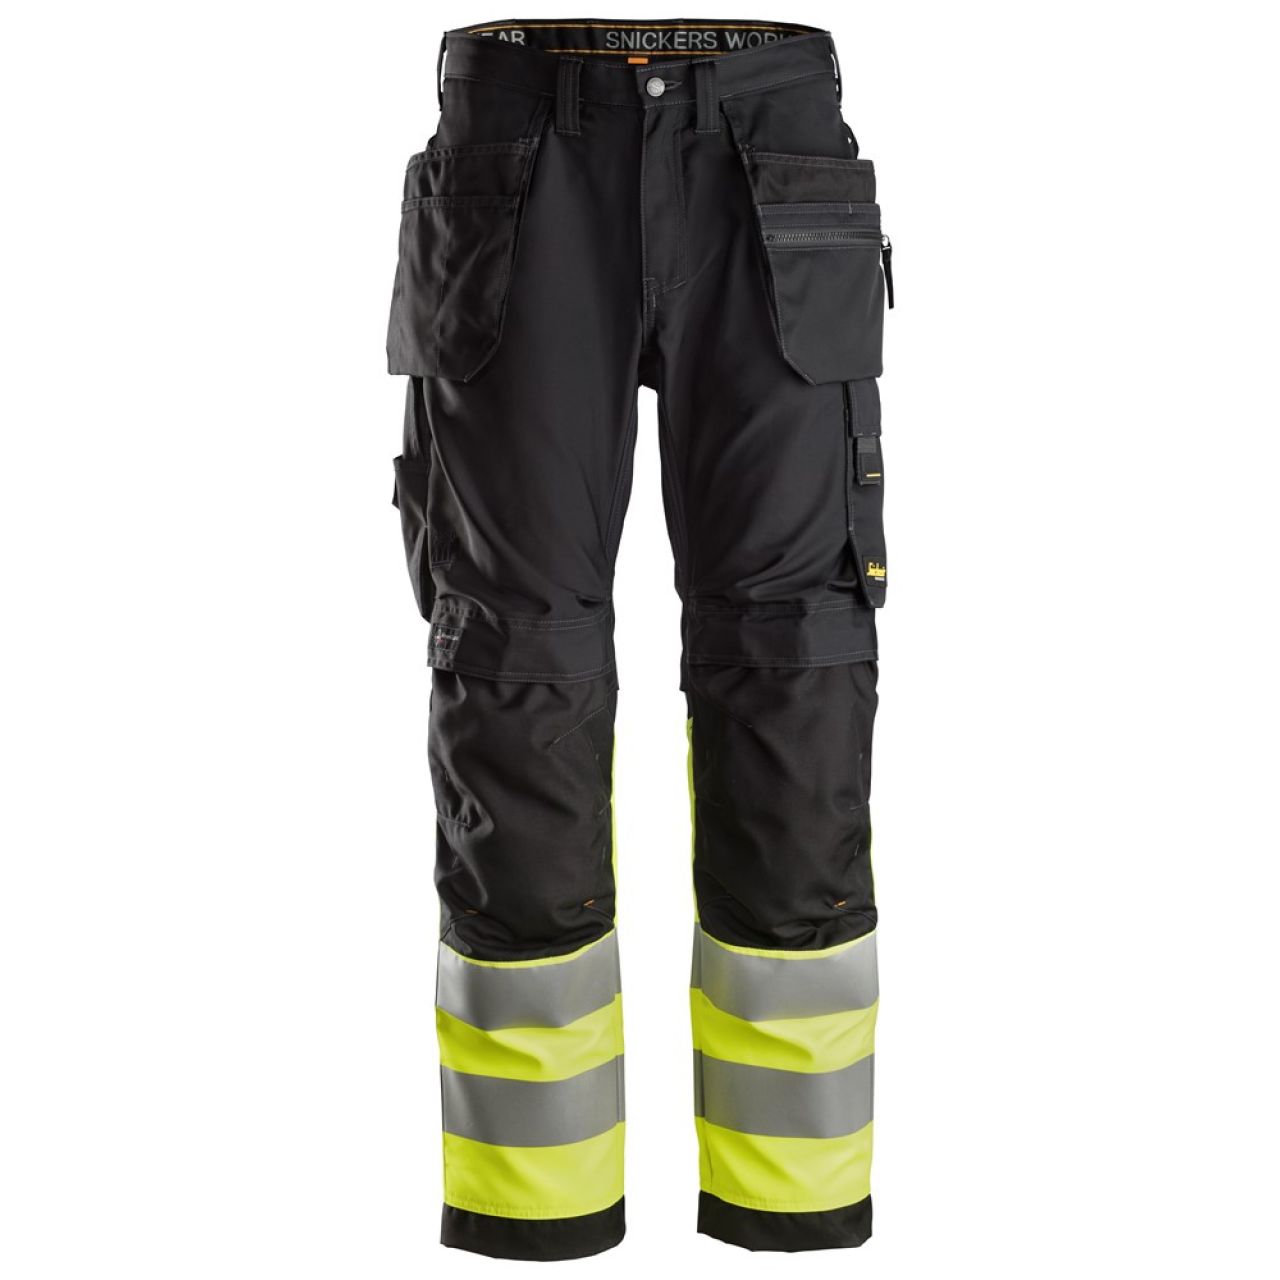 6233 Pantalones largos de trabajo de alta visibilidad clase 1 con bolsillos flotantes AllroundWork negro-amarillo talla 58